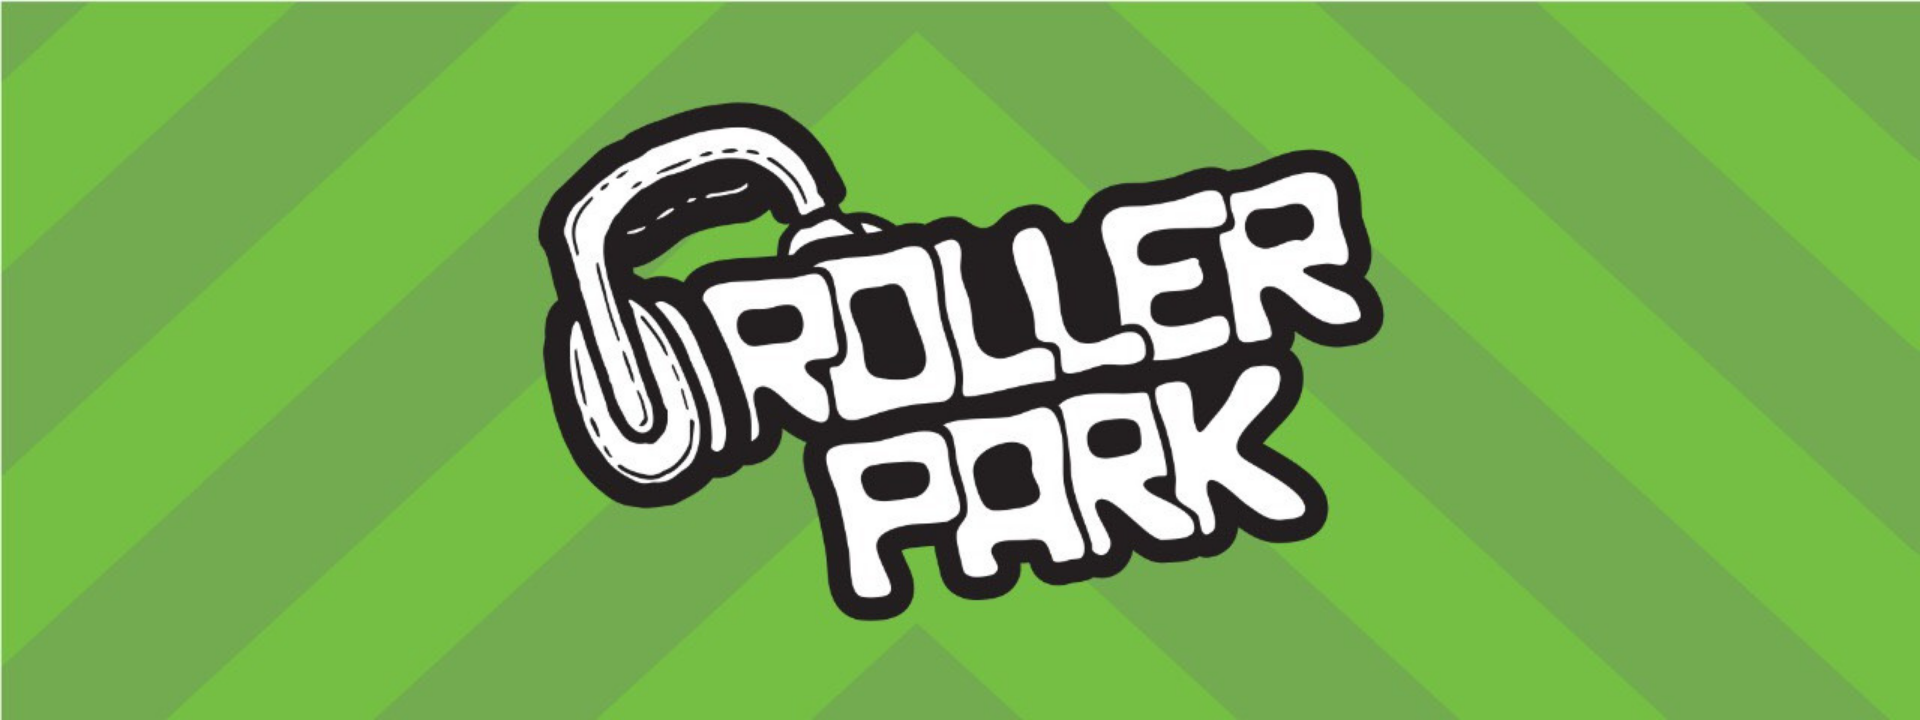 Roller Park